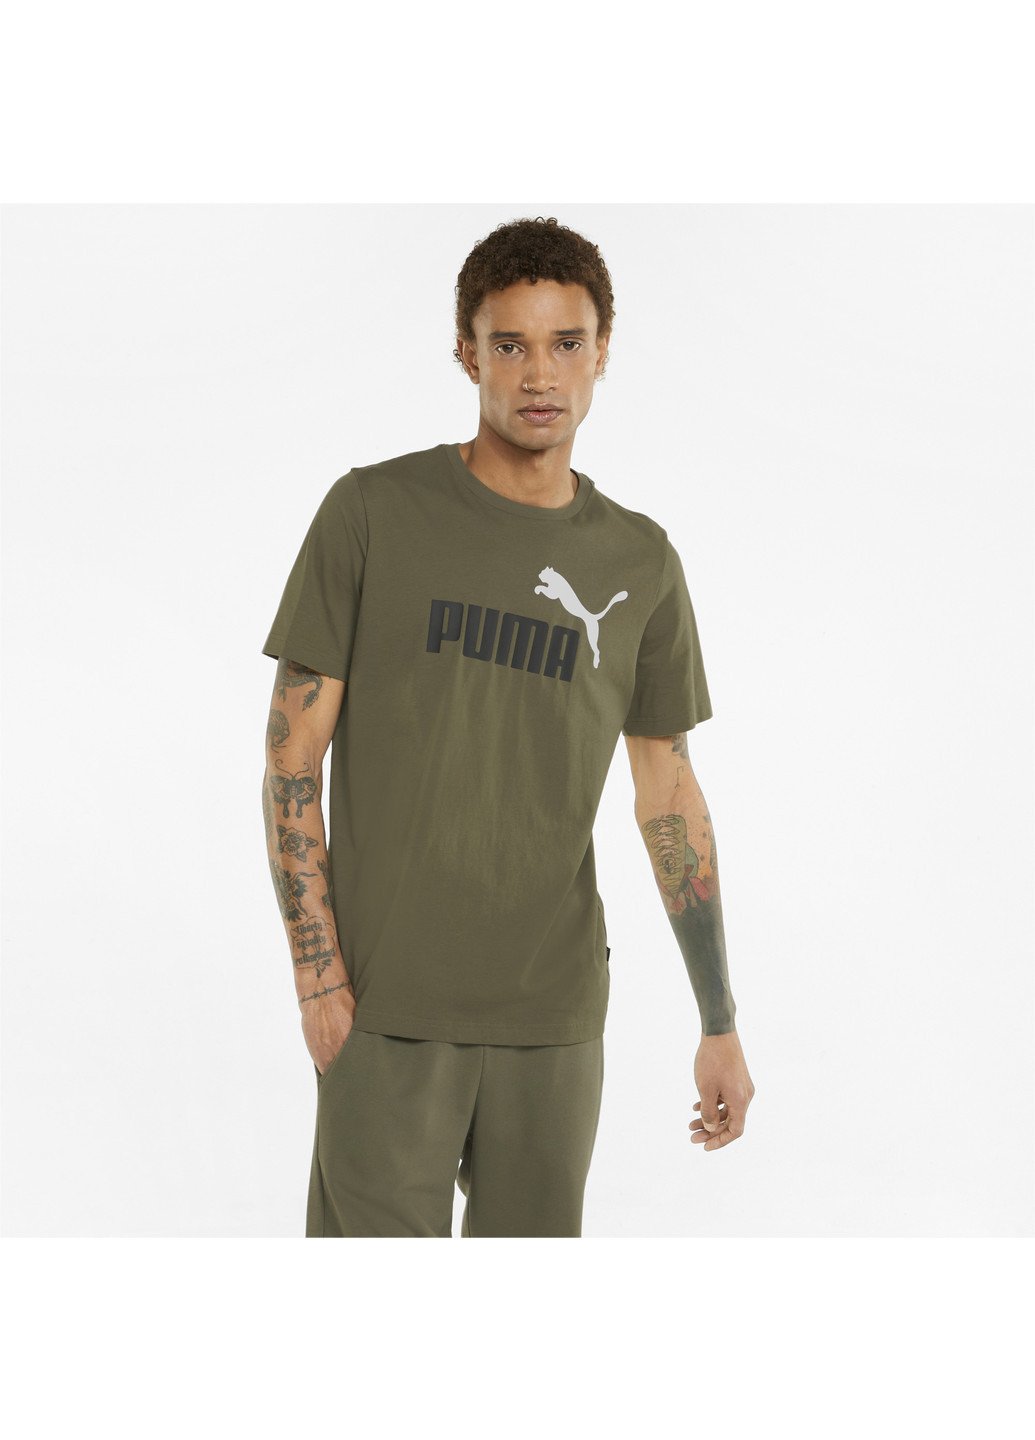 Зеленая демисезонная футболка essentials+ 2 colour logo men's tee Puma